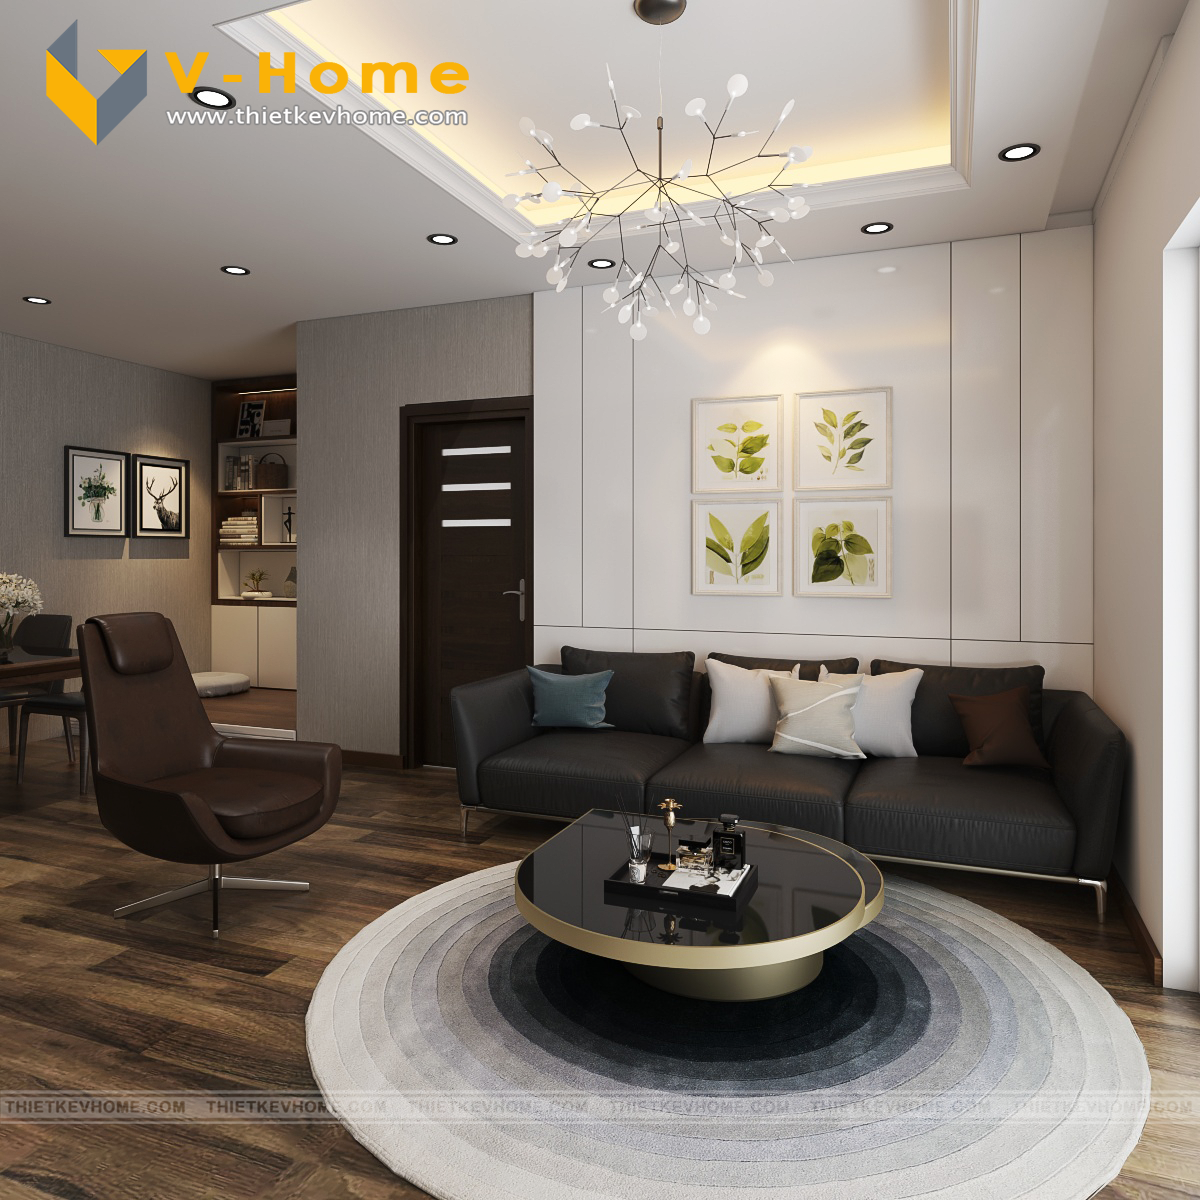 V-Home là chốn nghỉ dưỡng hàng đầu tại Season Avenue. Với thiết kế thông minh, tối ưu không gian sống, bạn sẽ có thể tận hưởng nhân đôi tiện nghi và sự thoải mái trong không gian sống của mình. Hãy cùng xem hình ảnh về V-Home tại Season Avenue để tìm hiểu thêm về giải pháp nhà ở mà bạn nên chọn cho mình.